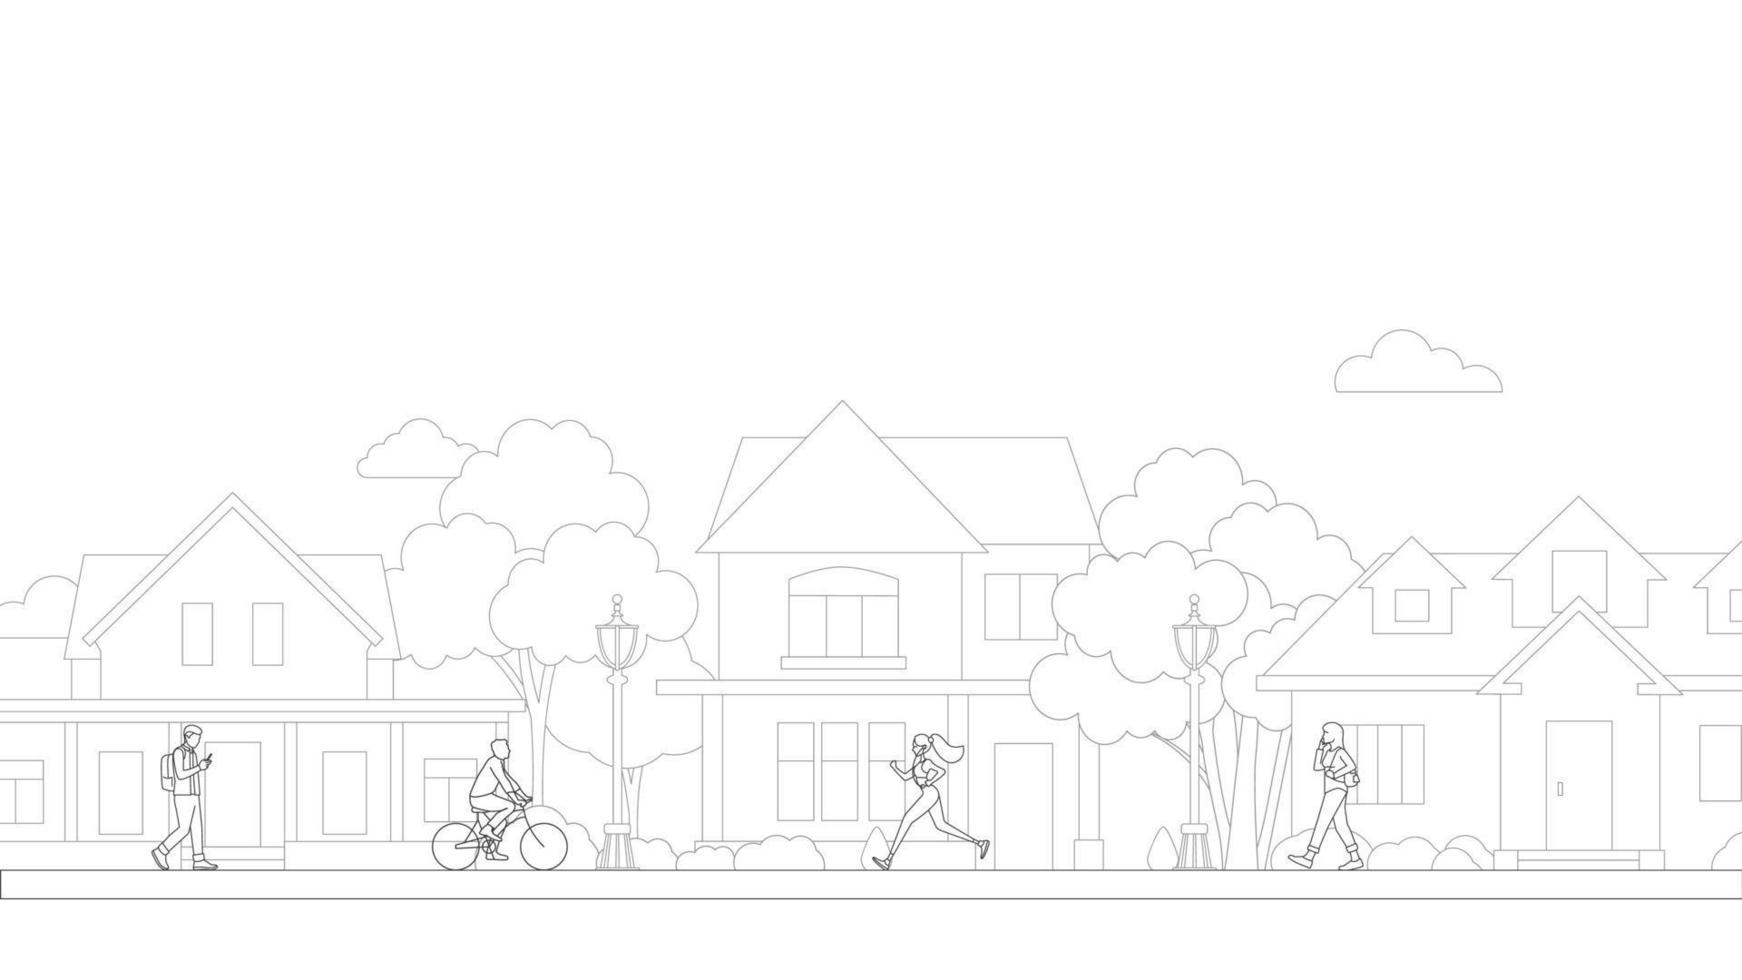 vetor de arte de linha de bairro de vida de aldeia de pessoas. edifícios residenciais na rua suburbana. andar de bicicleta e caminhar com as pessoas no bairro da vida da vila.